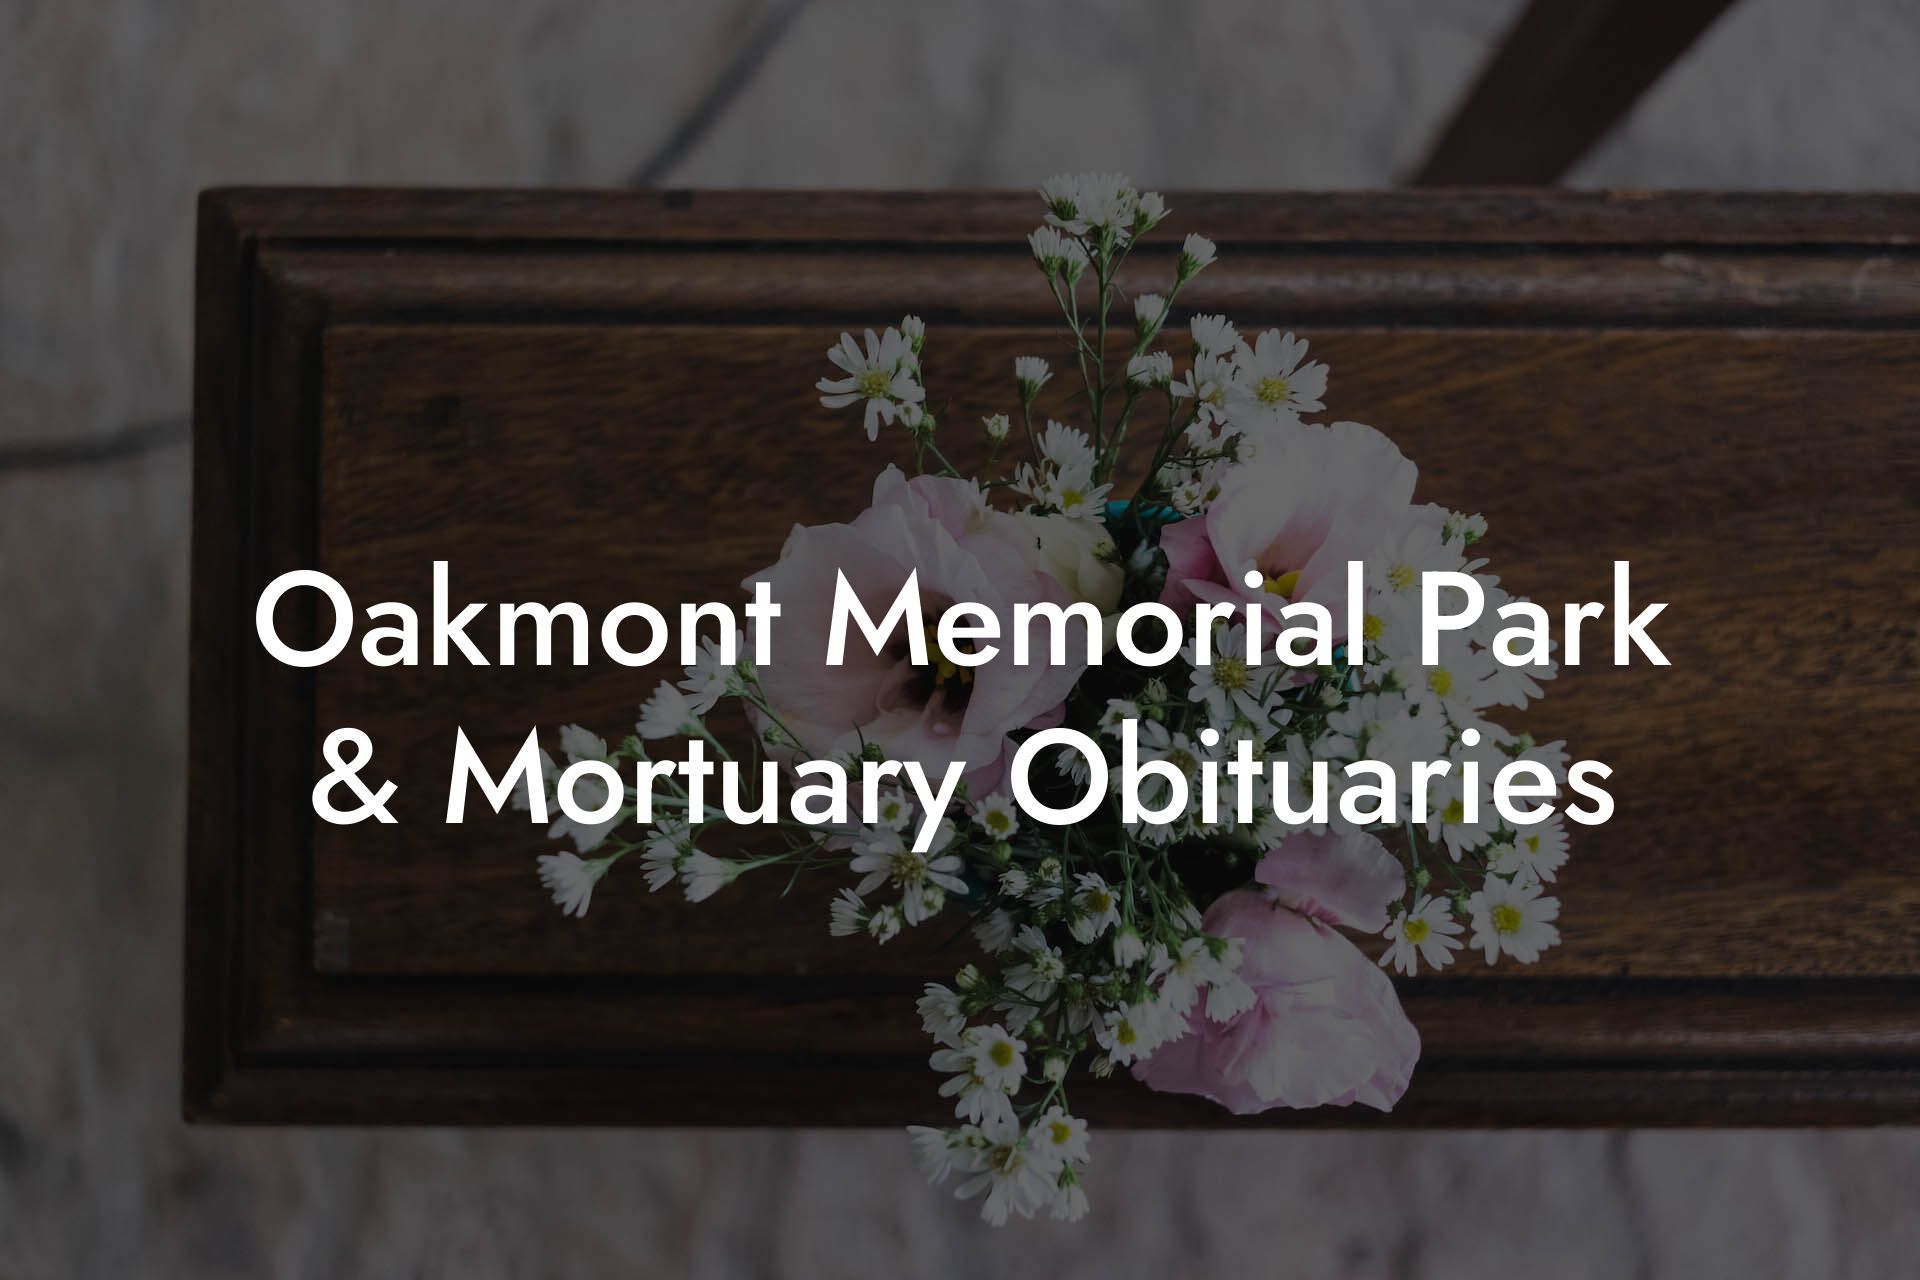 Oakmont Memorial Park & Mortuary Obituaries